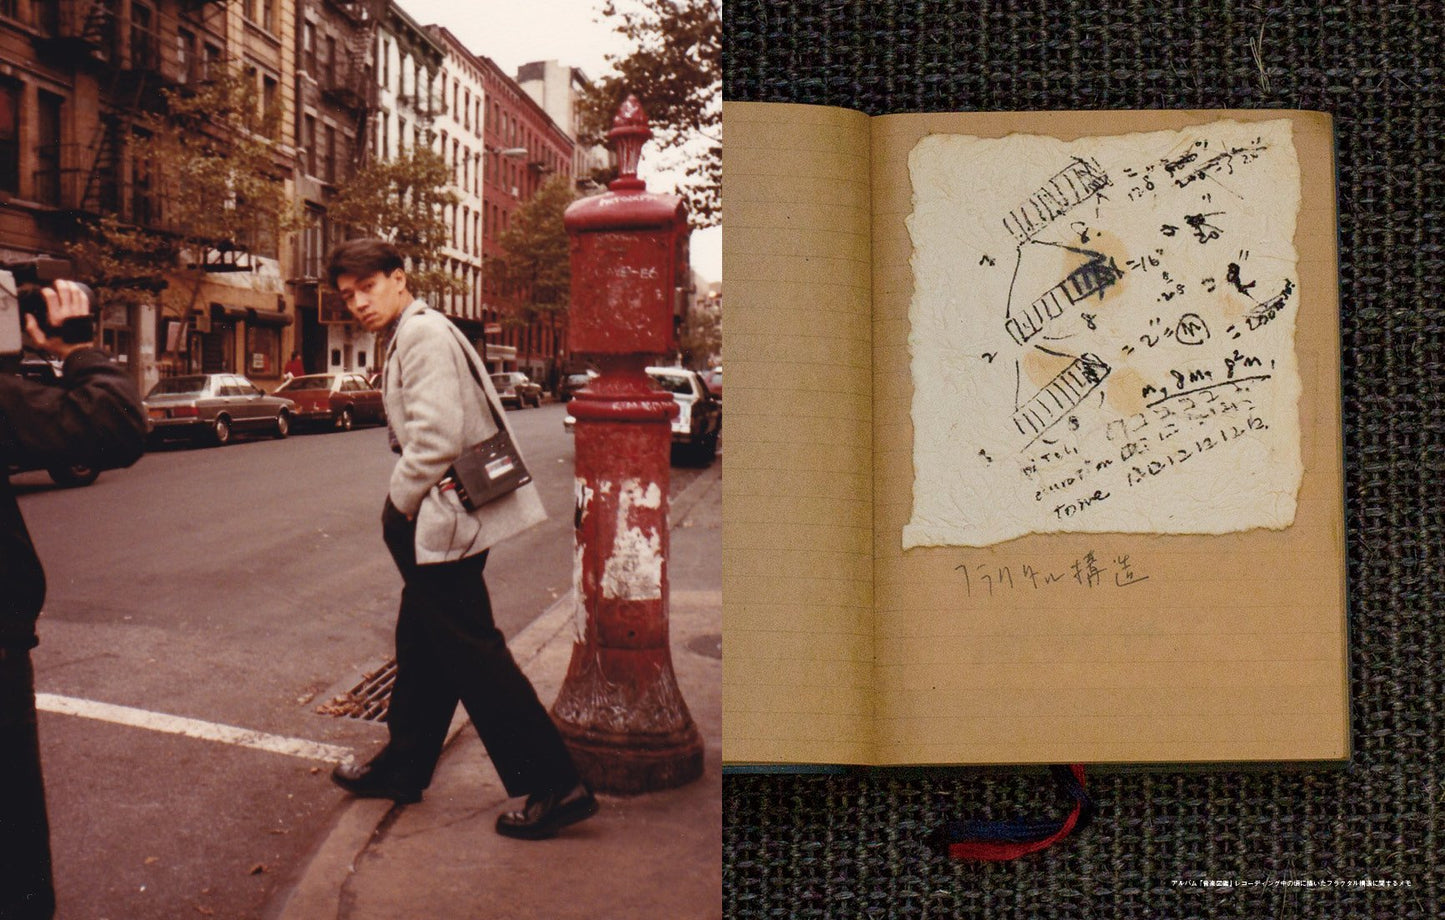 日本雜誌 SWITCH Vol.35 No.5《特集:坂本龍一 もの探しニューヨーク》(Special Feature: Ryuichi Sakamoto Looking for Things in New York) ＜出版日期：2017年4月＞ 144頁 22x28x1cm